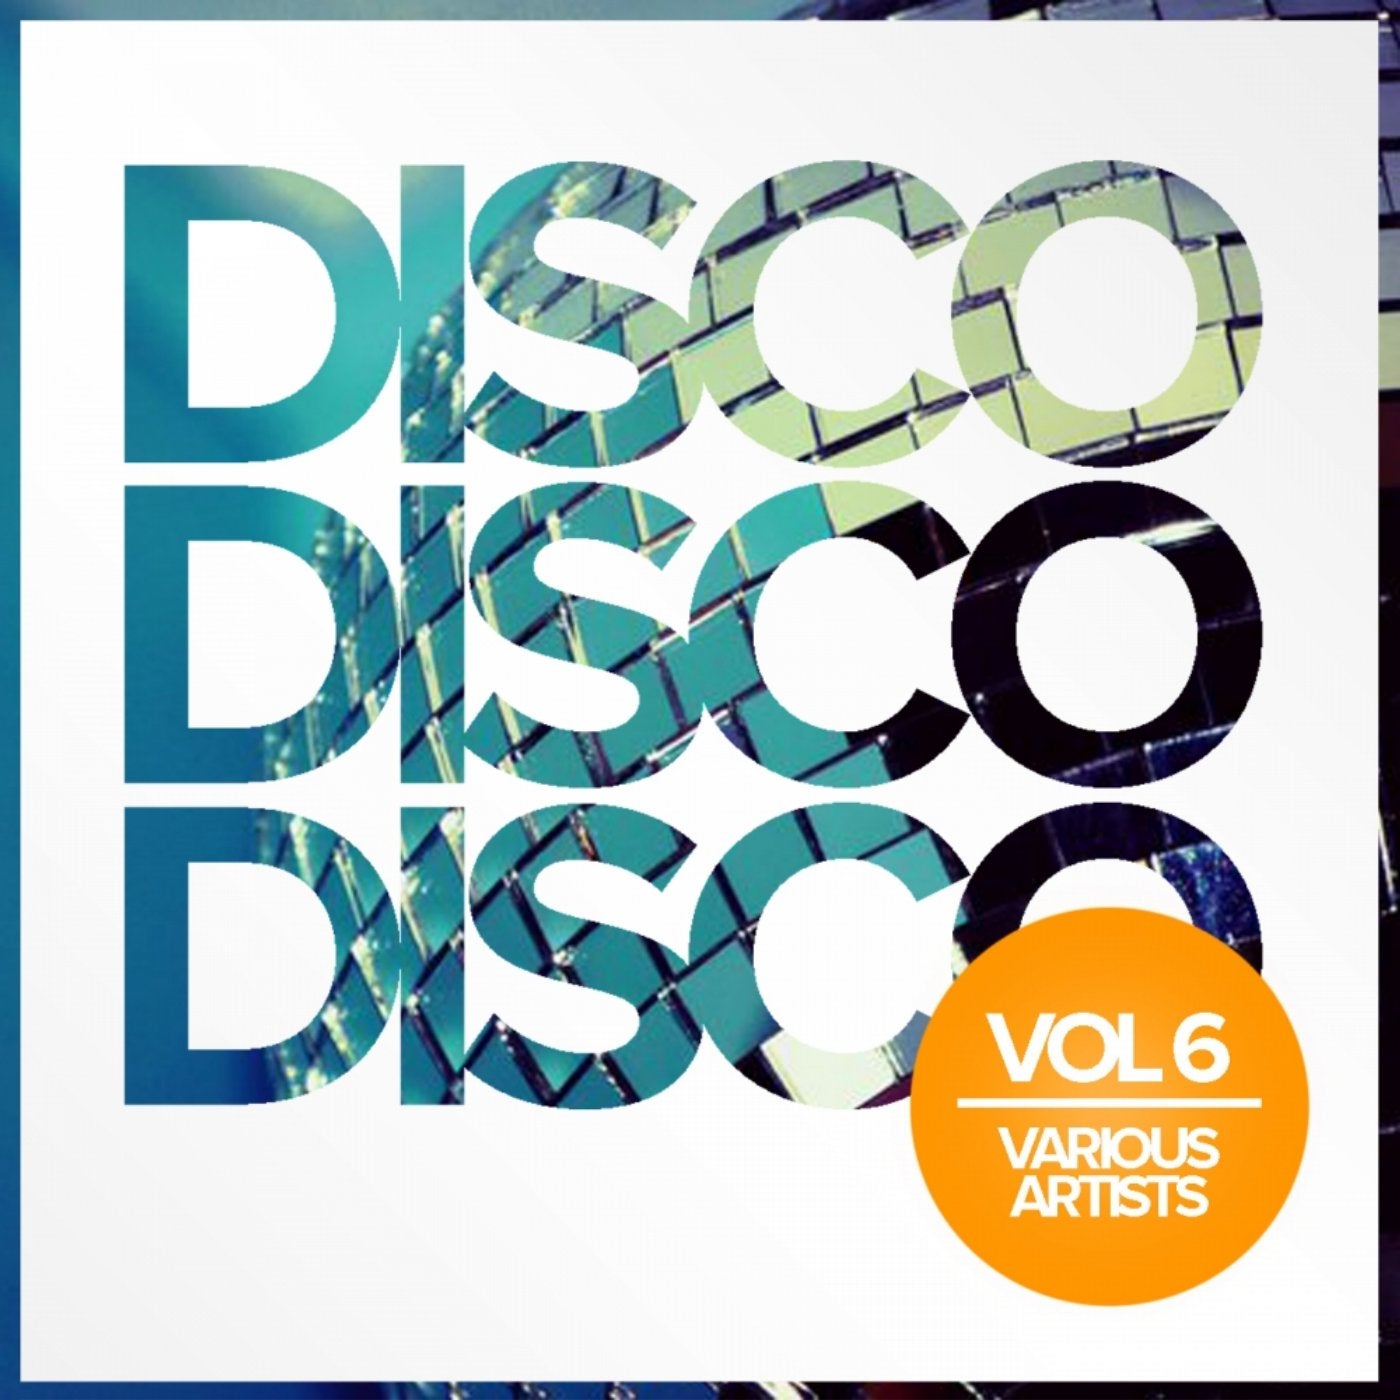 Disco Disco Disco, Vol. 6